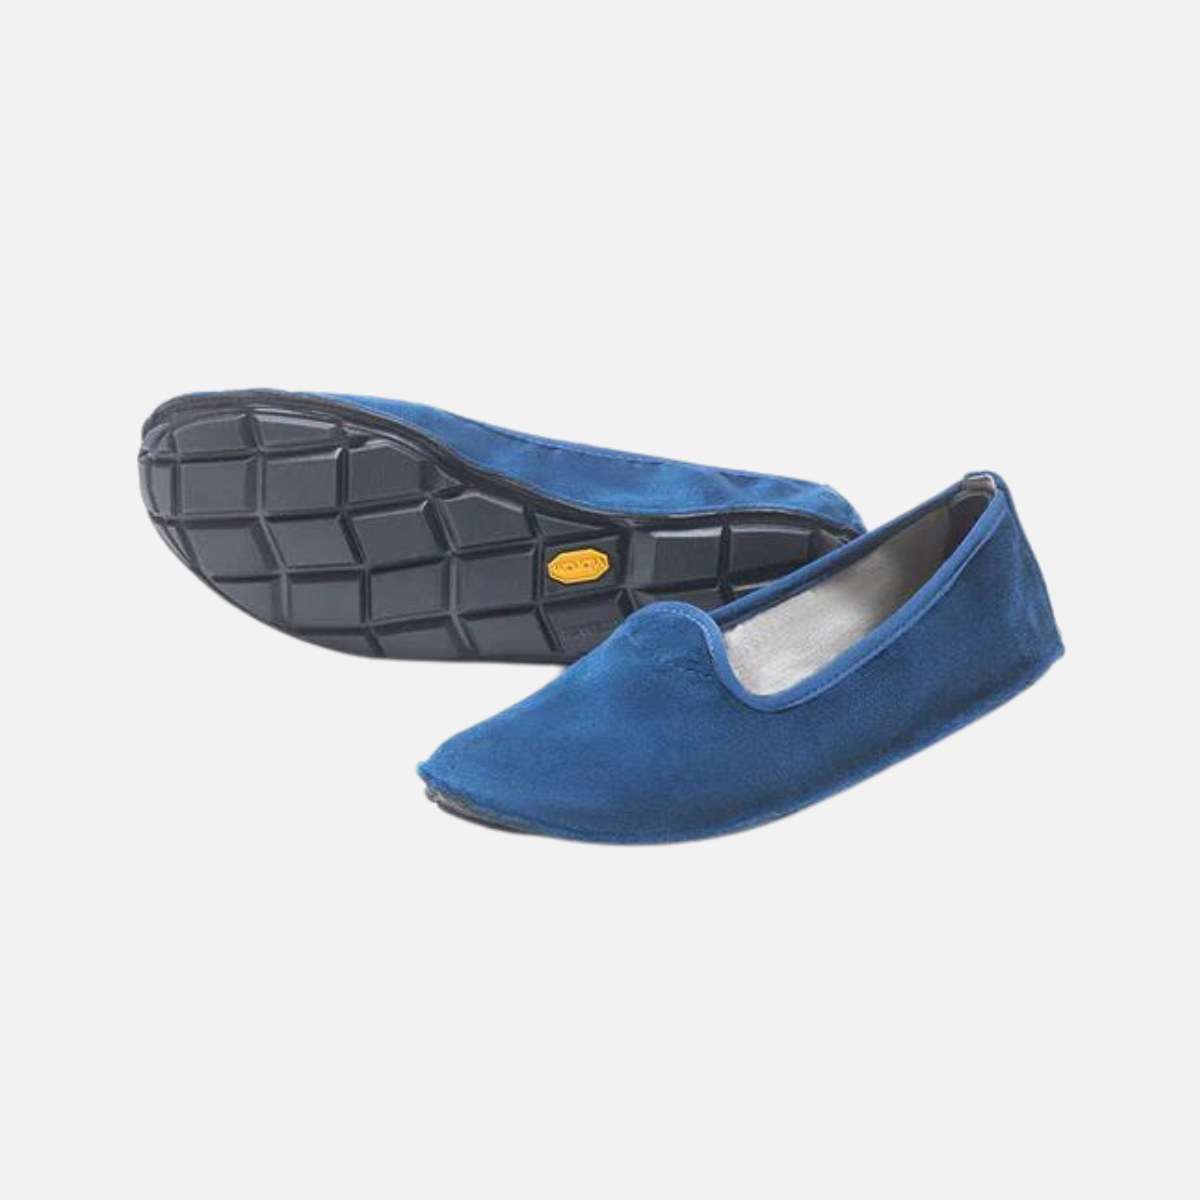 Vibram ONEQ Slipon Velvet Women's Casual Shoes -Blue/Black